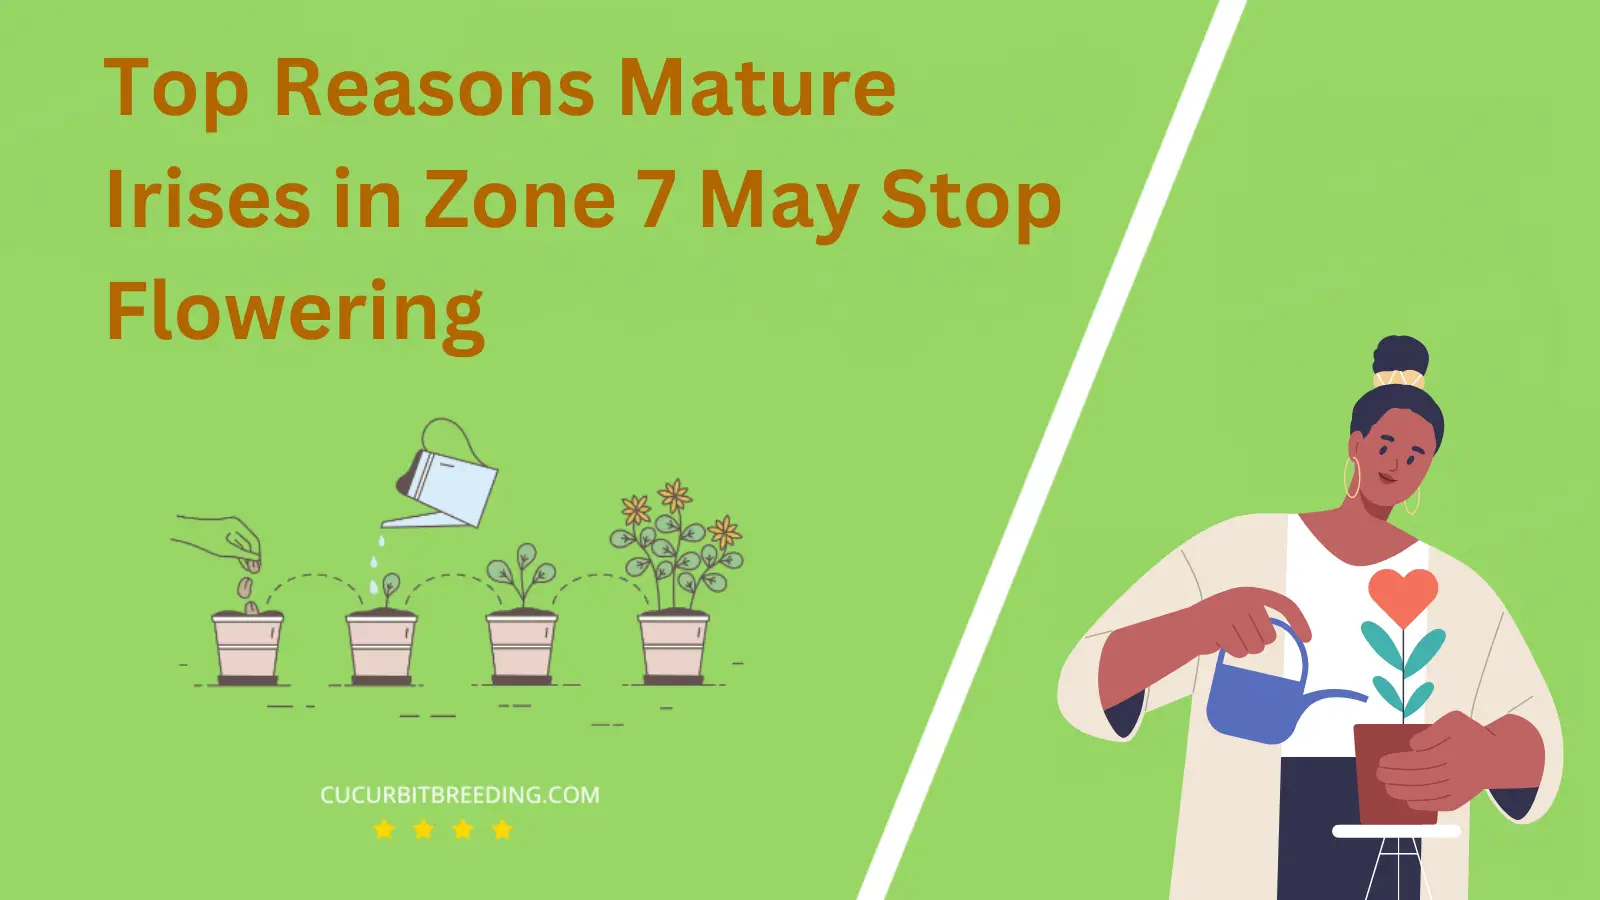 Top Reasons Mature Irises in Zone 7 May Stop Flowering